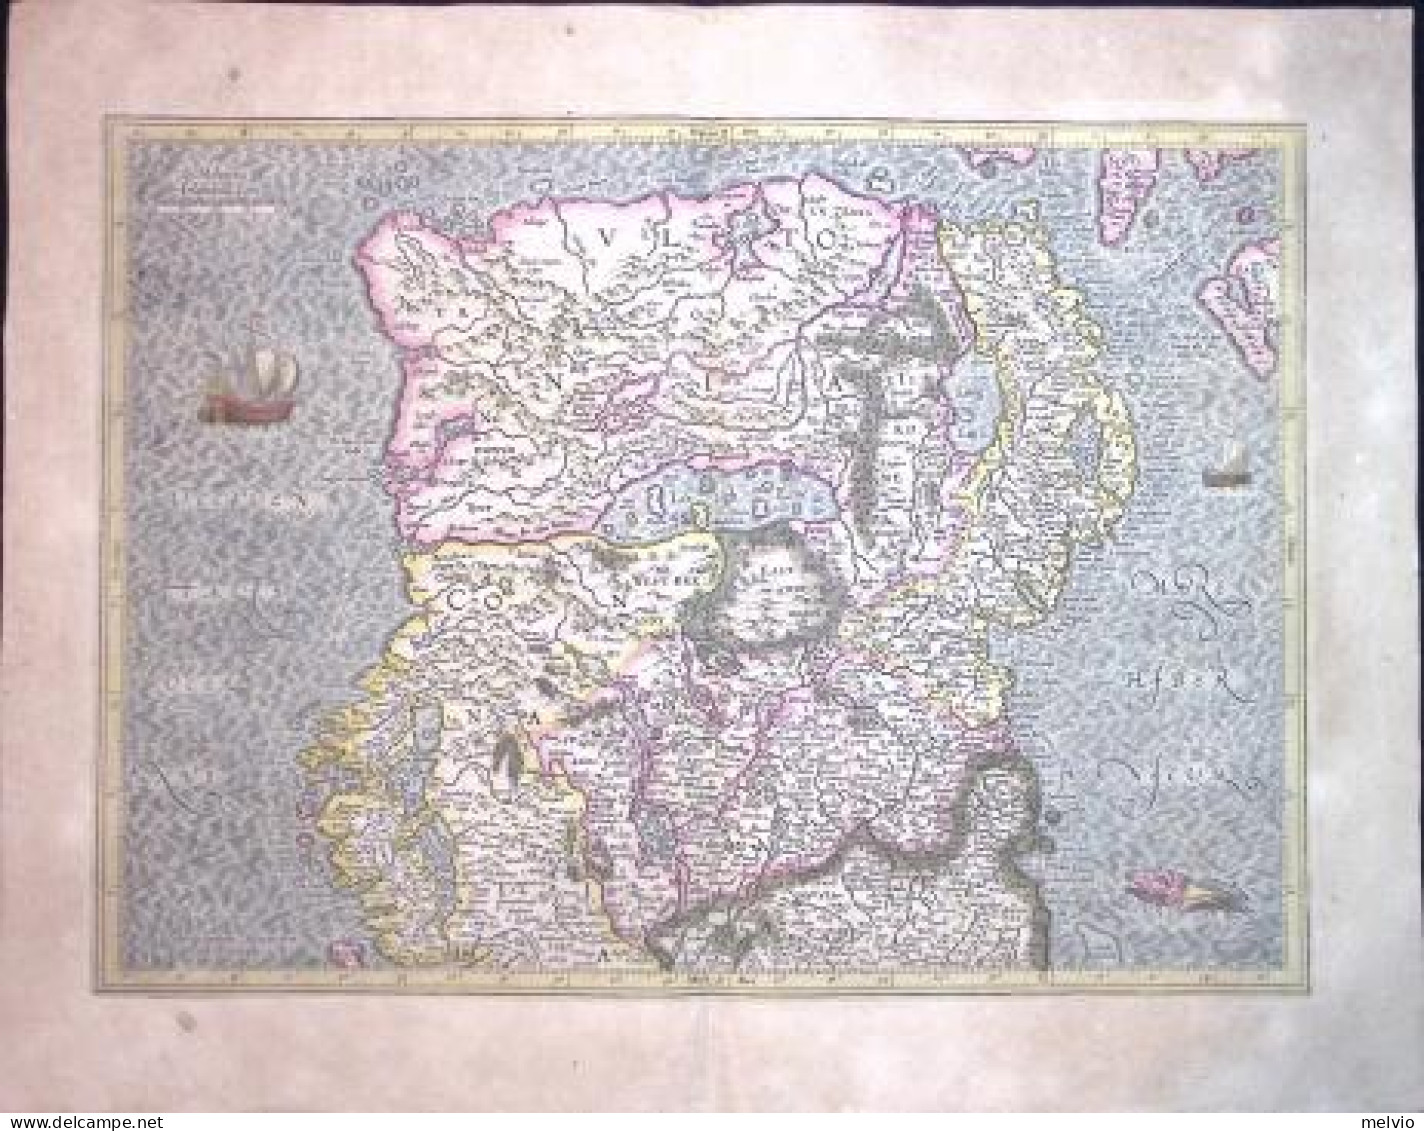 1630-Irlanda Ioannes Janssonius - Hiberniae II Tabula In Qua Ultonia,Connacia,Me - Carte Geographique